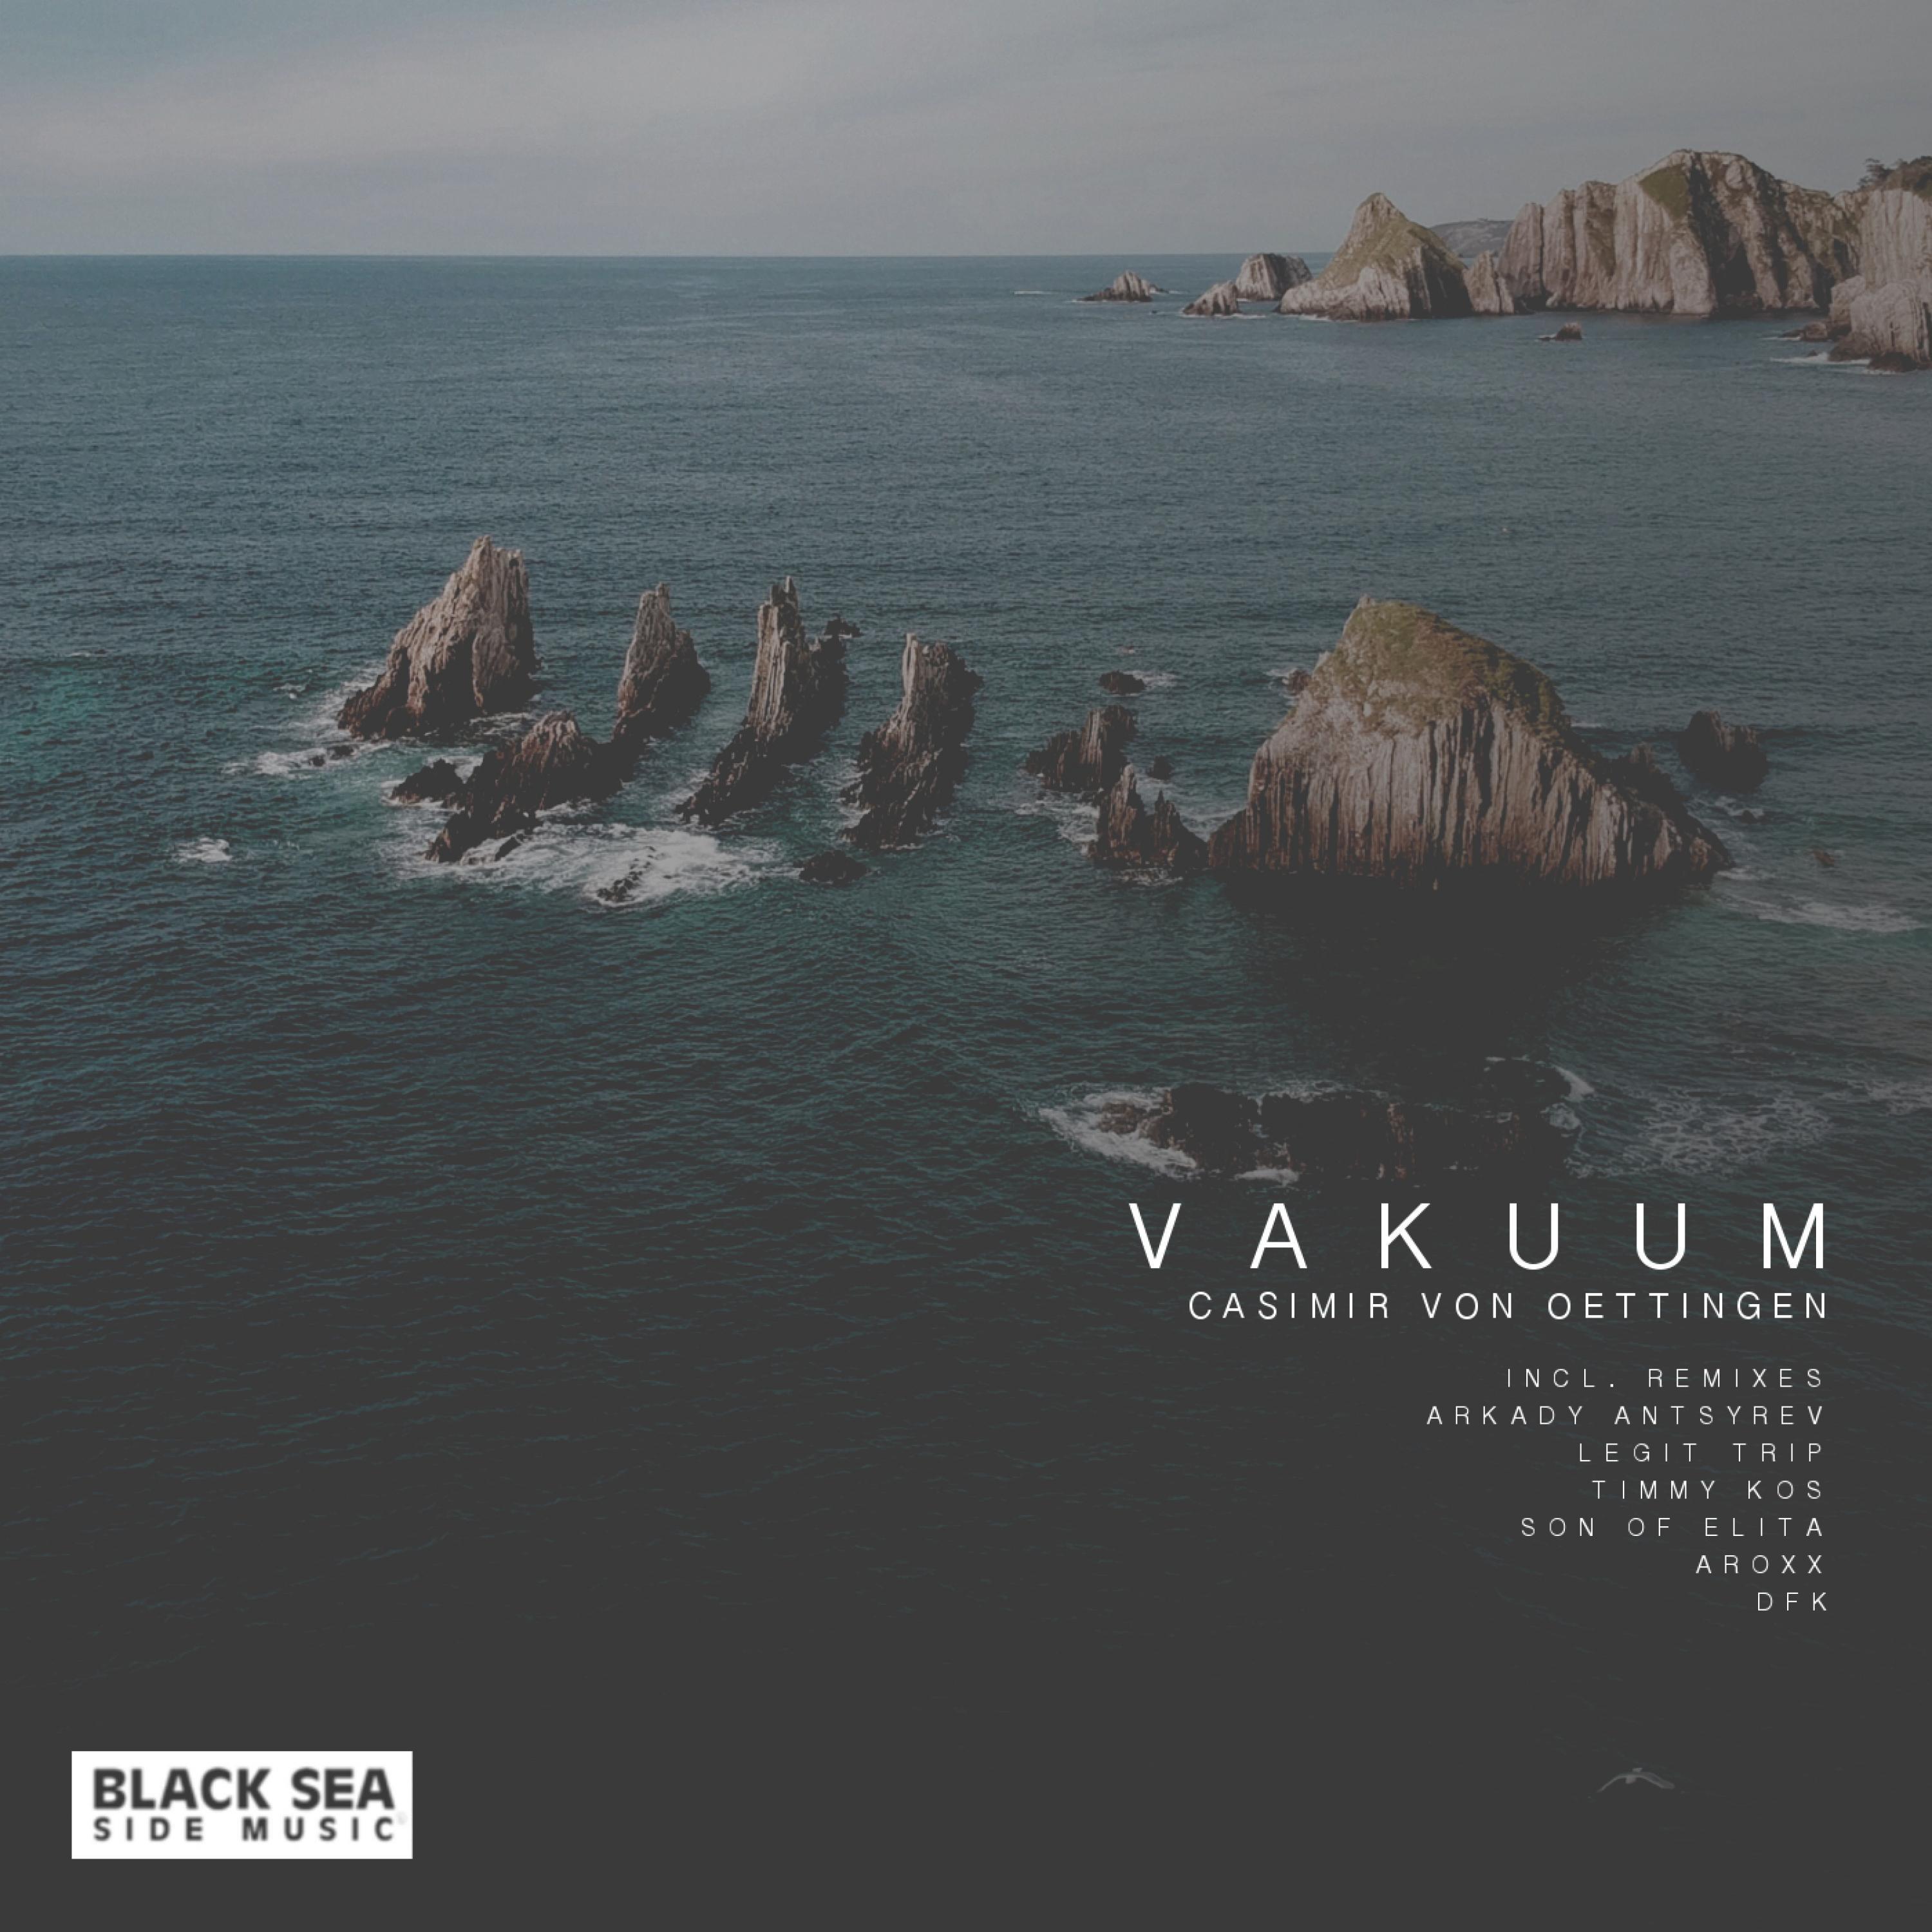 Casimir von Oettingen - Vakuum (Arkady Antsyrev Remix)